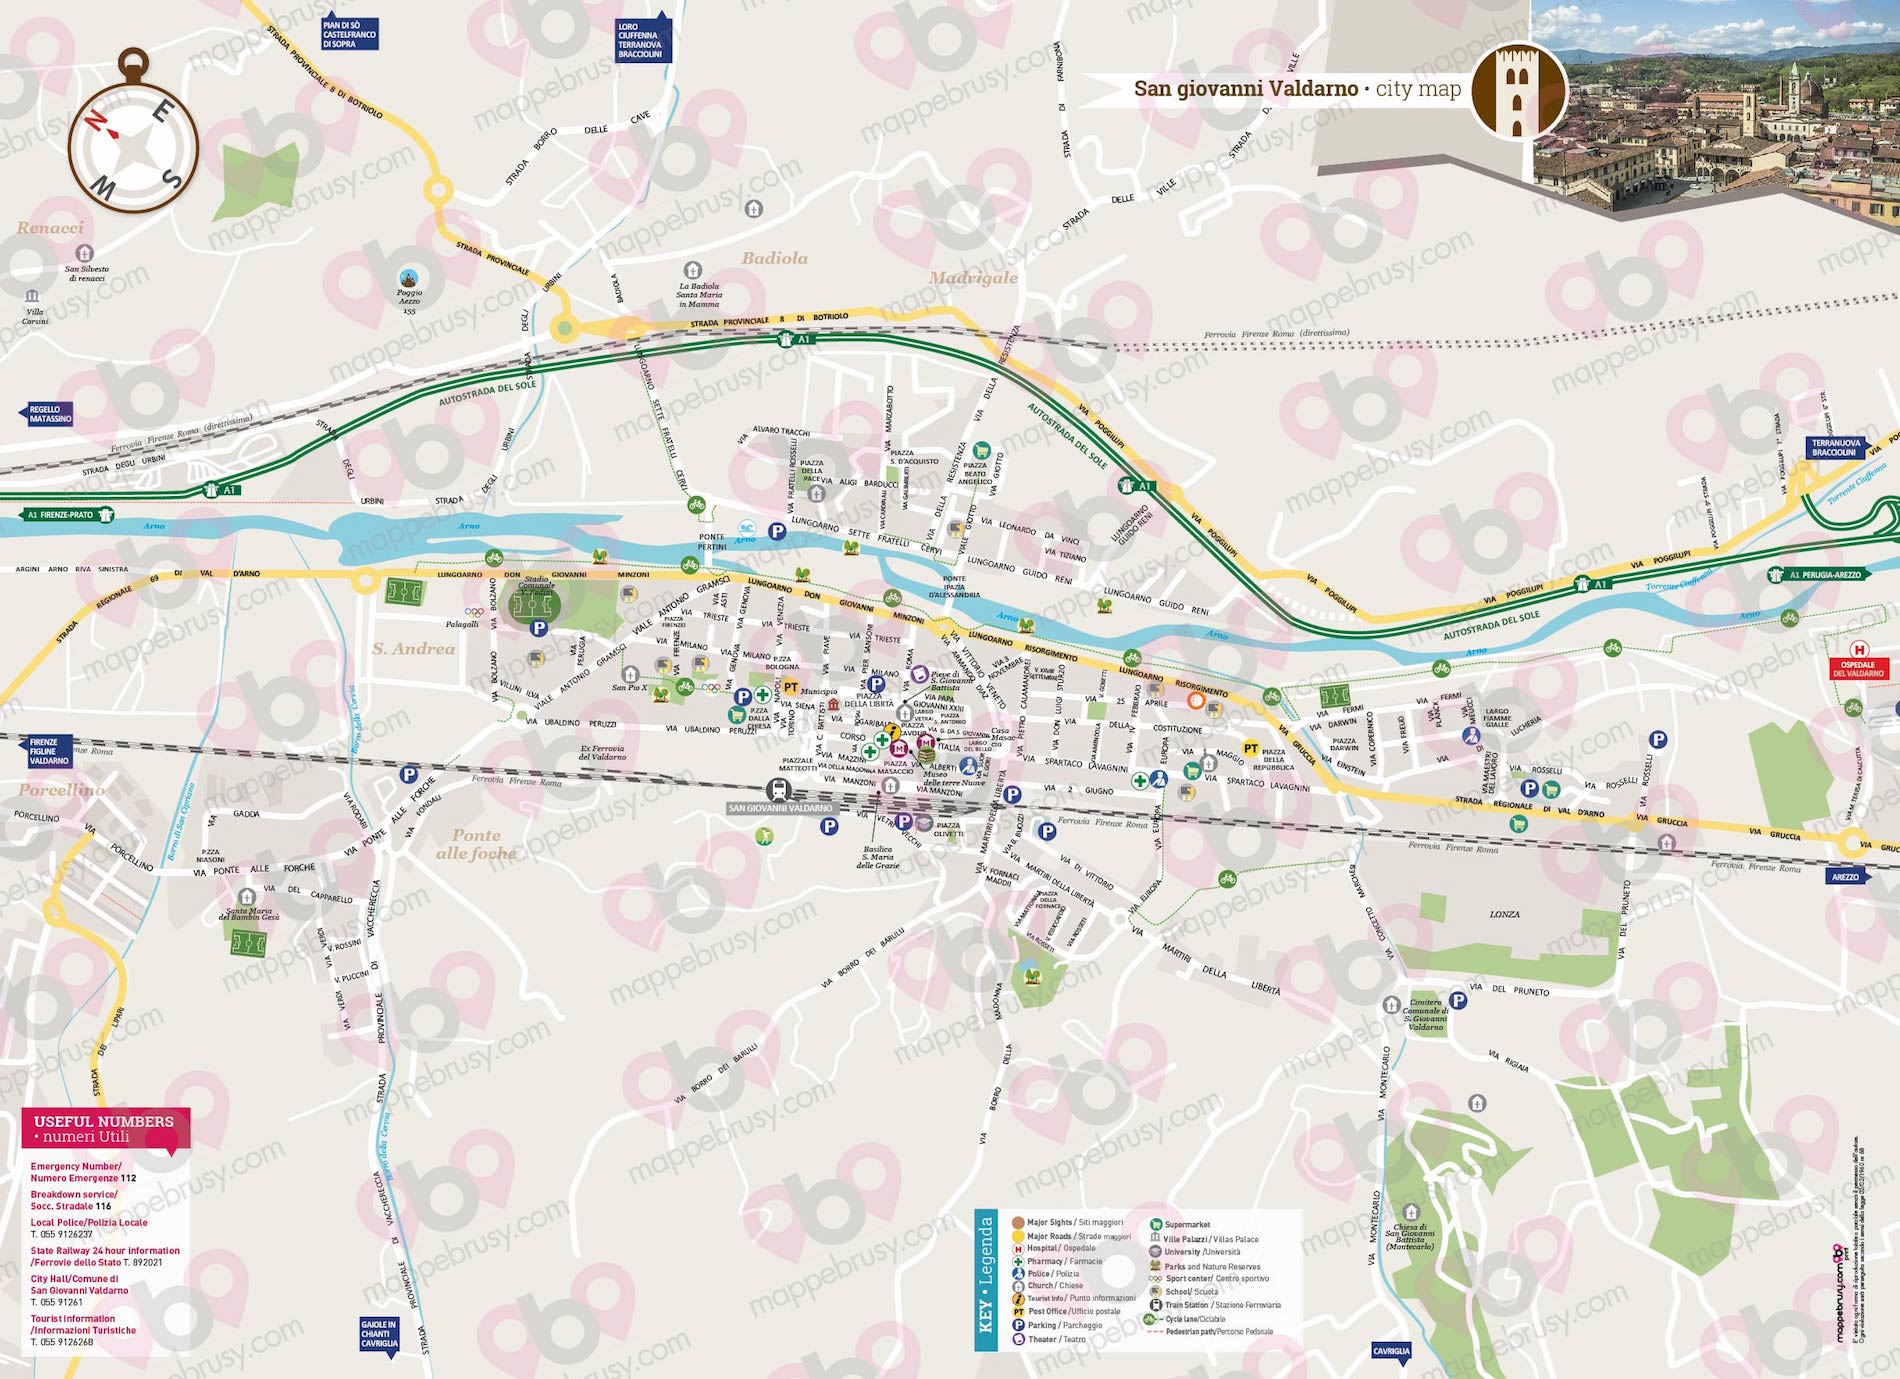 Mappa di San Giovanni Valdarno - San Giovanni Valdarno city map - mappa San Giovanni Valdarno - mappa personalizzata di San Giovanni Valdarno - mappa tursitica di San Giovanni Valdarno